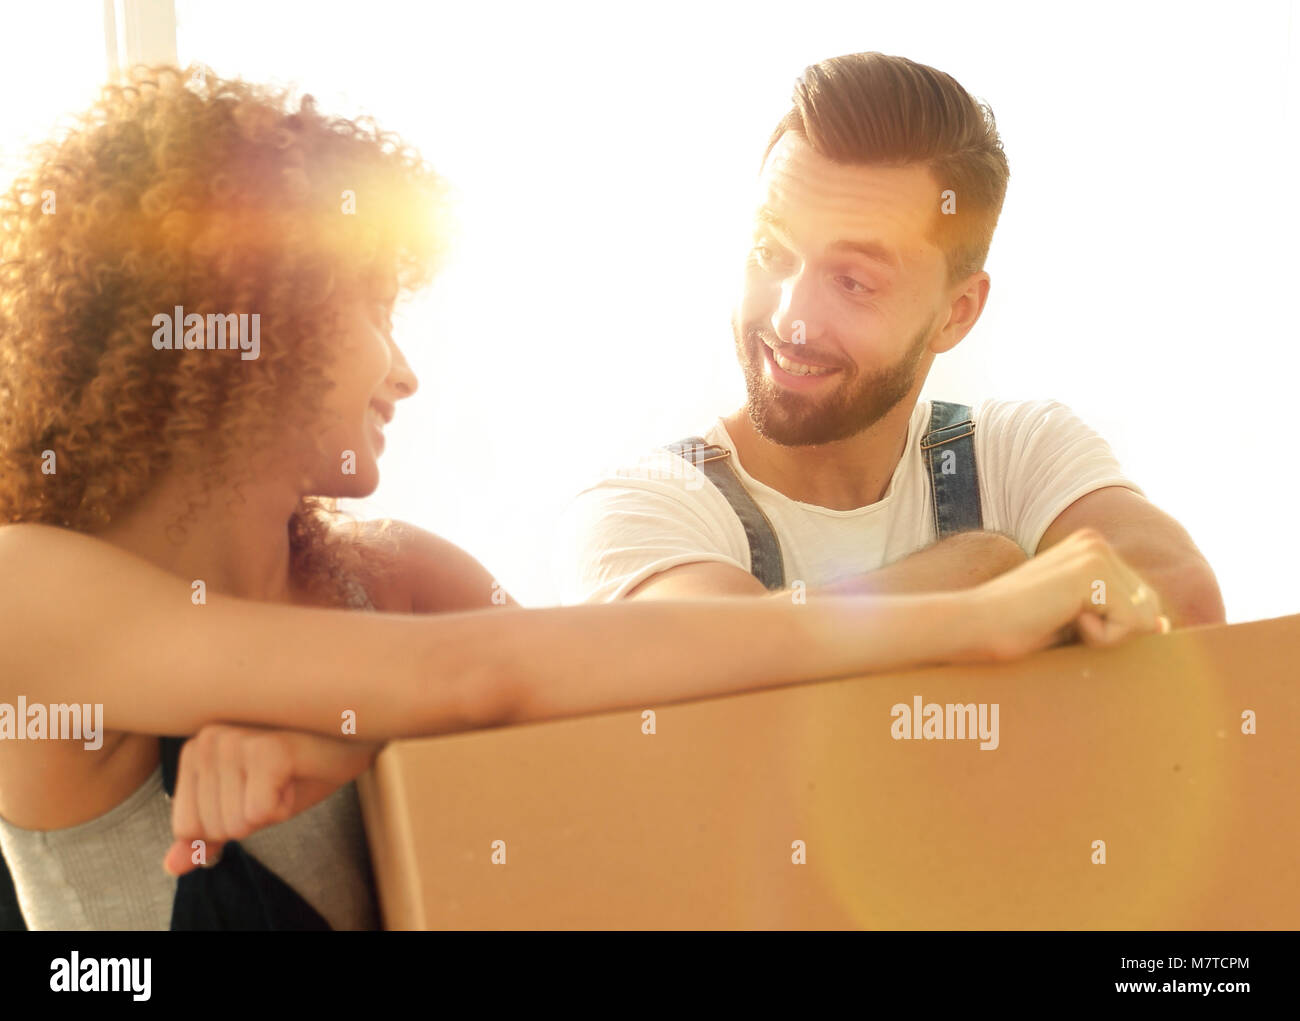 Happy couple honeymooners standing near boxes Stock Photo